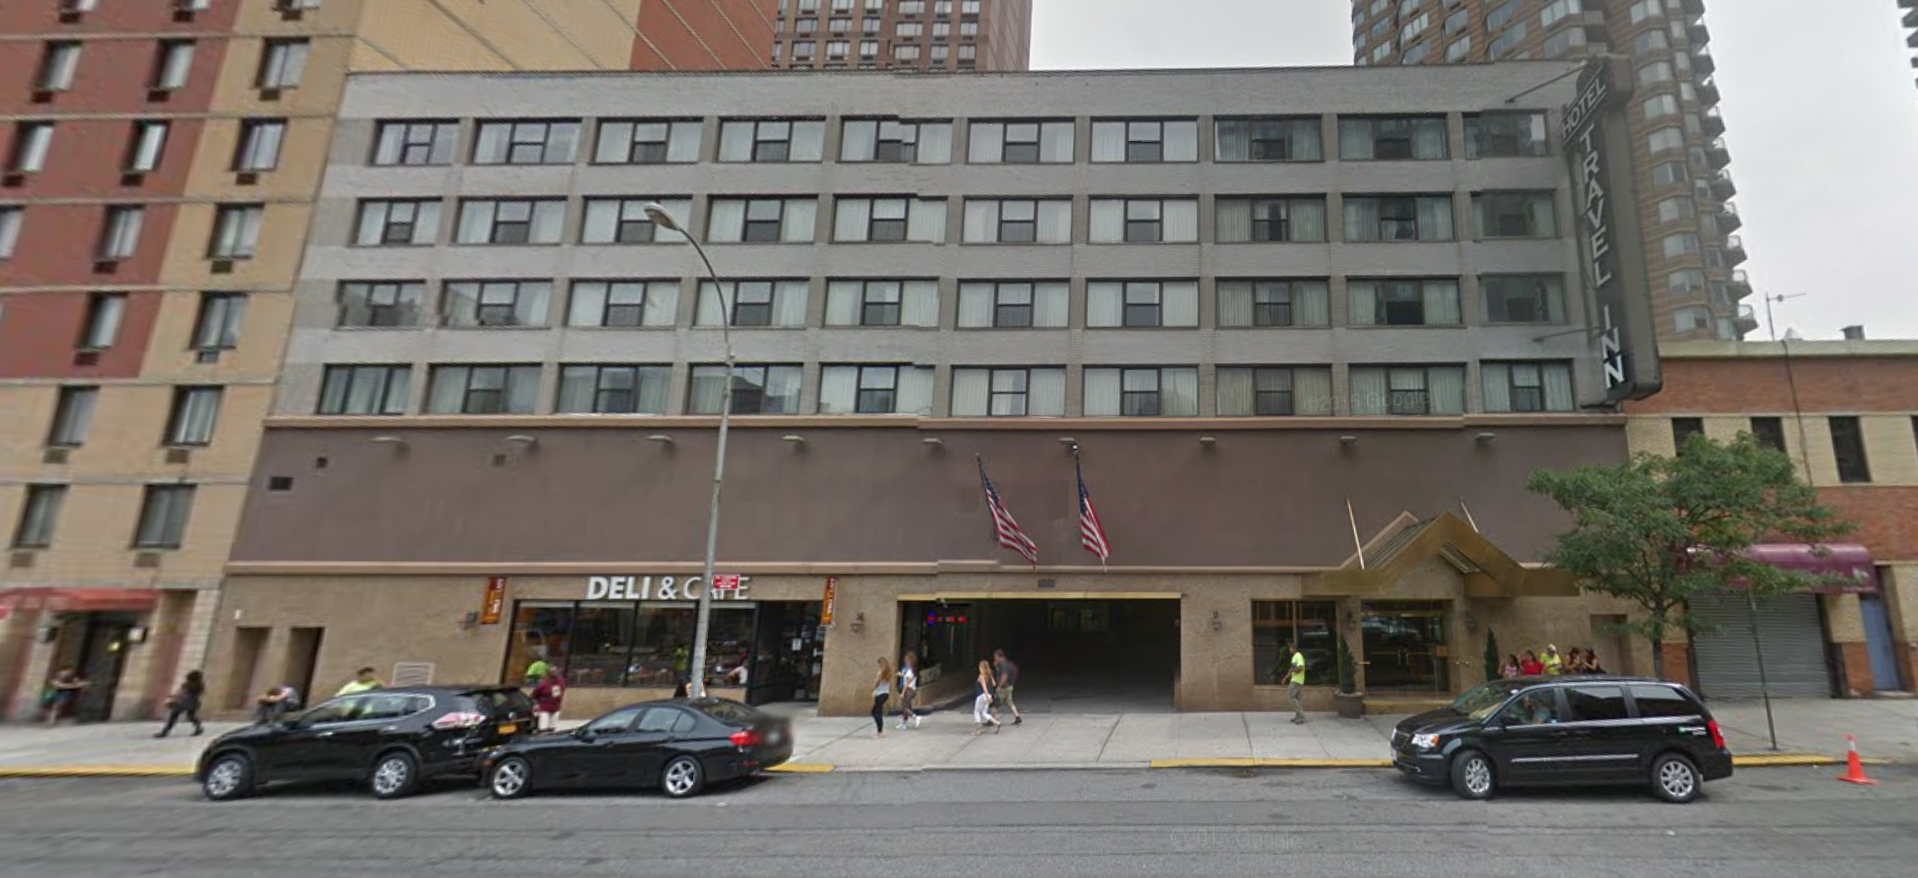 507 West 42nd Street, image via Google Maps